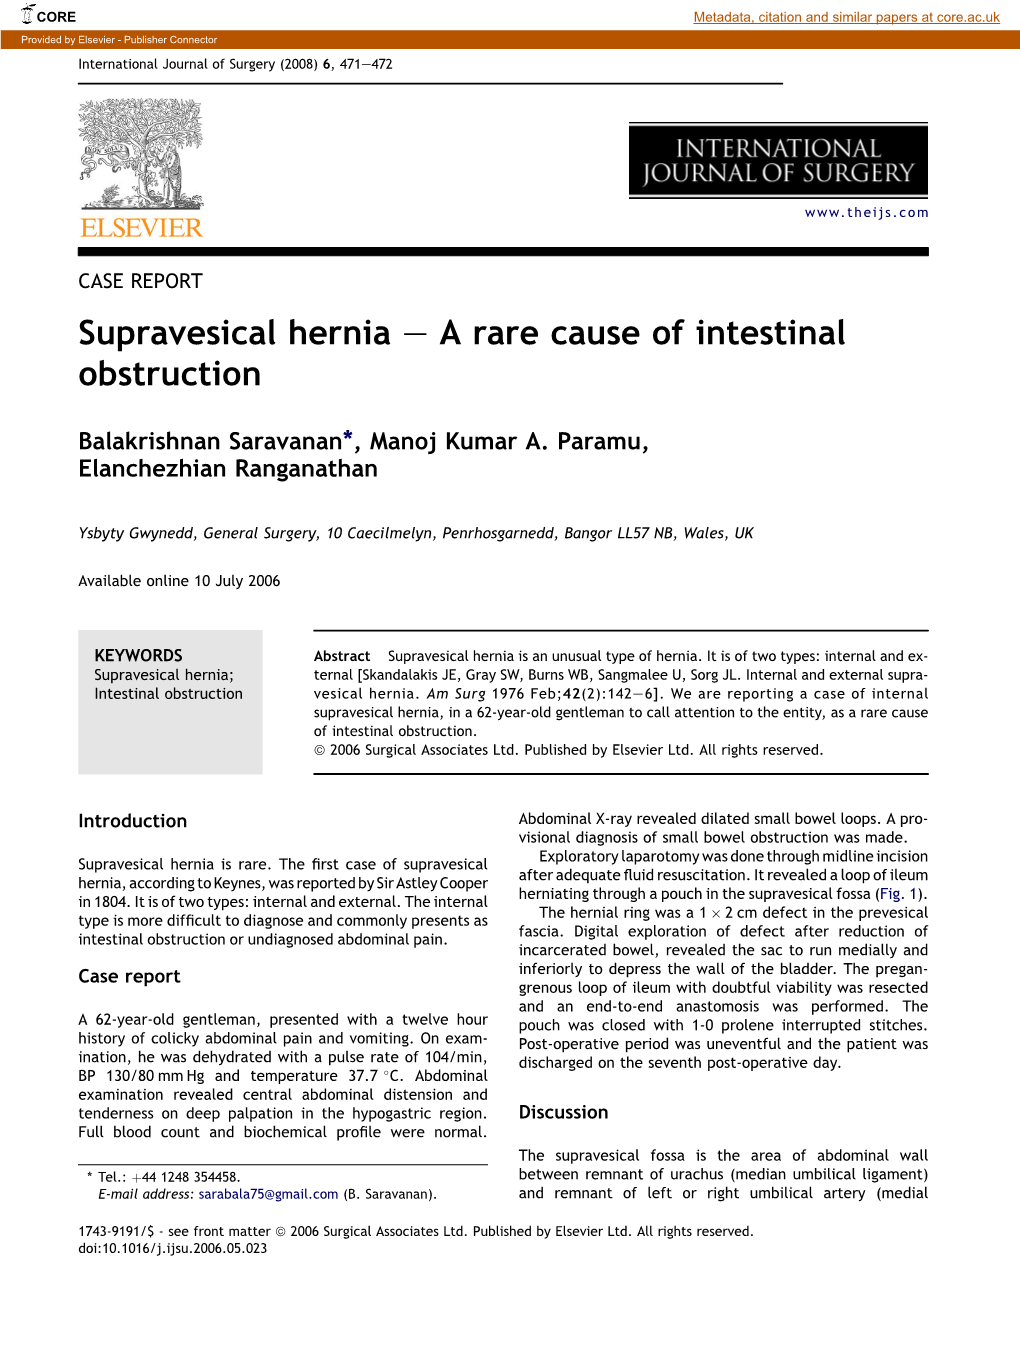 Supravesical Hernia E a Rare Cause of Intestinal Obstruction